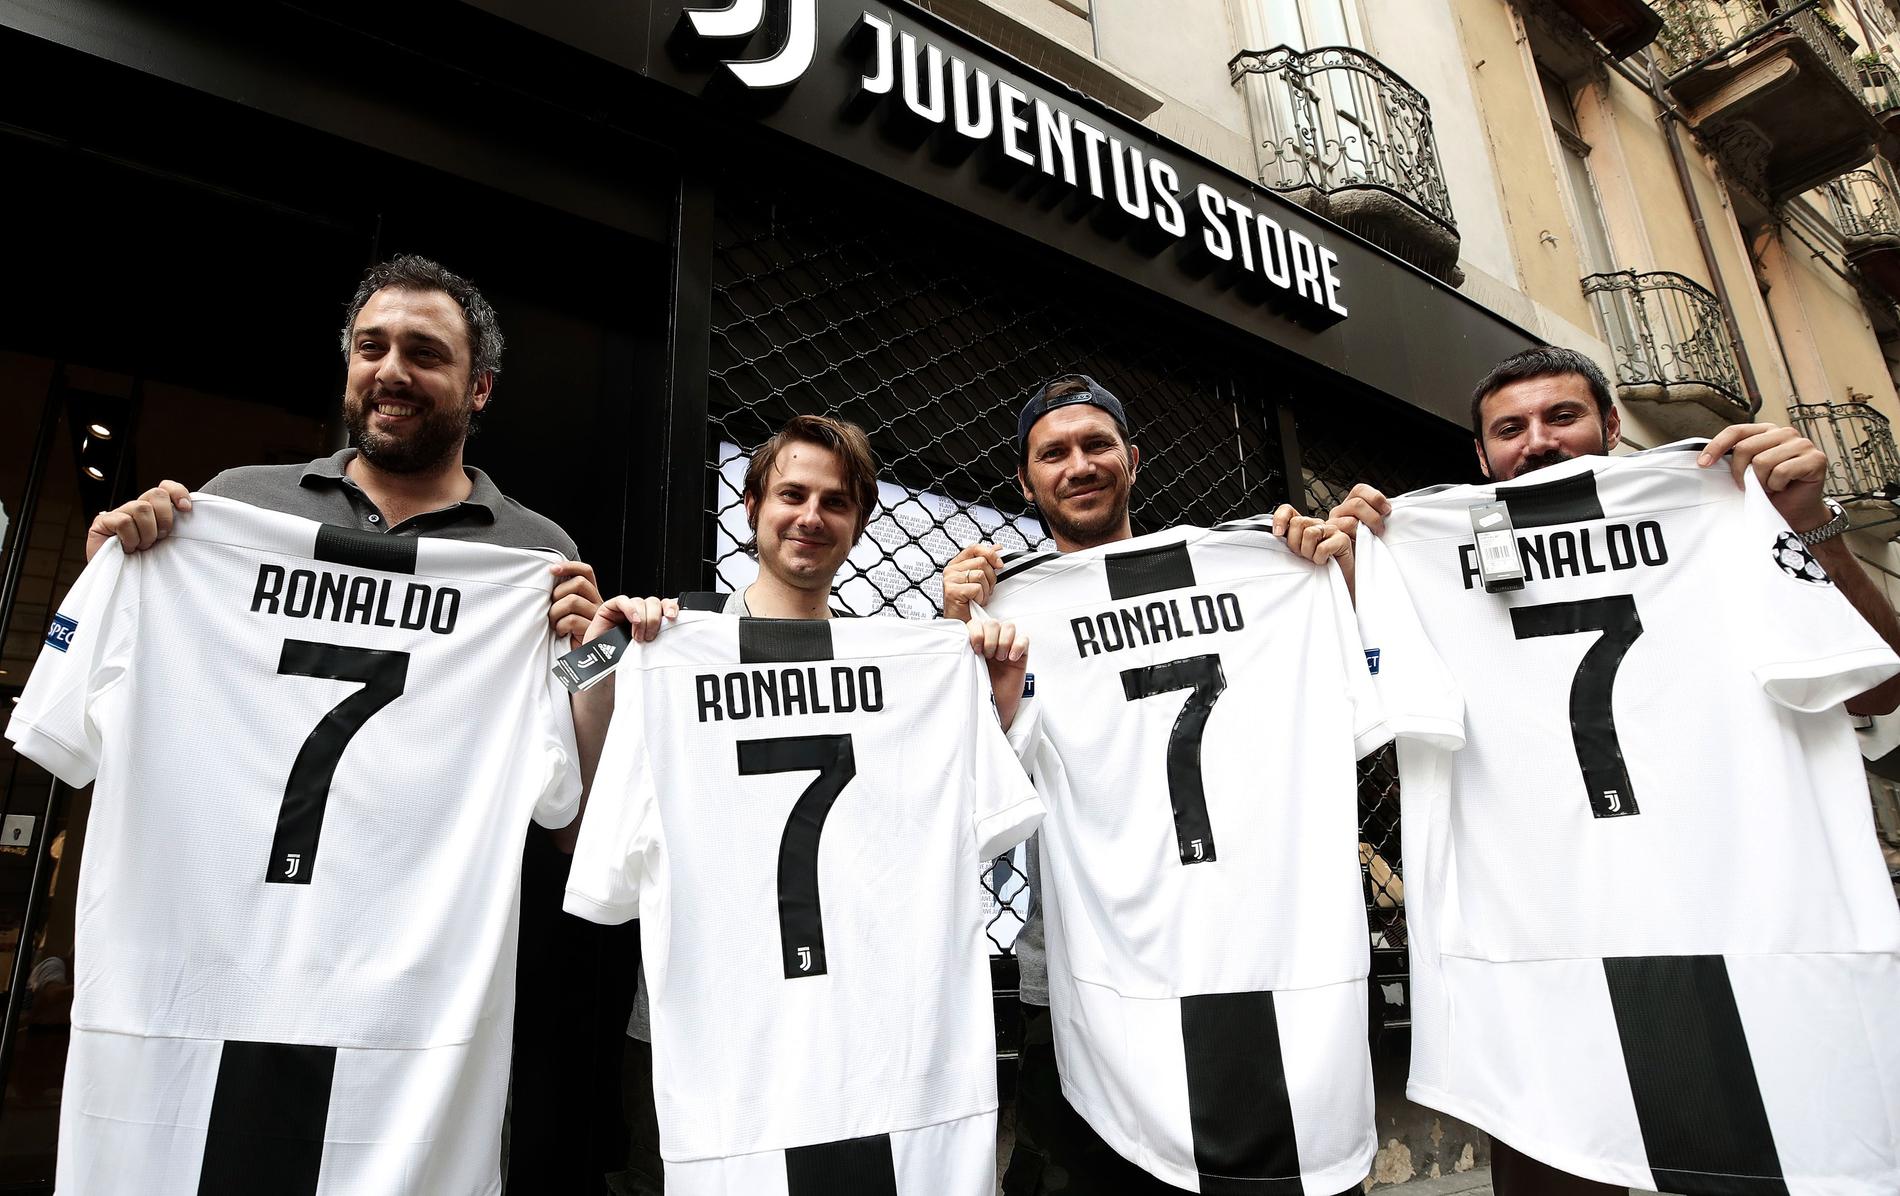 Den nya Ronaldo-tröjan går åt som smör i Juventus supportershoppar. Den här kvartetten har redan införskaffat sina exemplar.